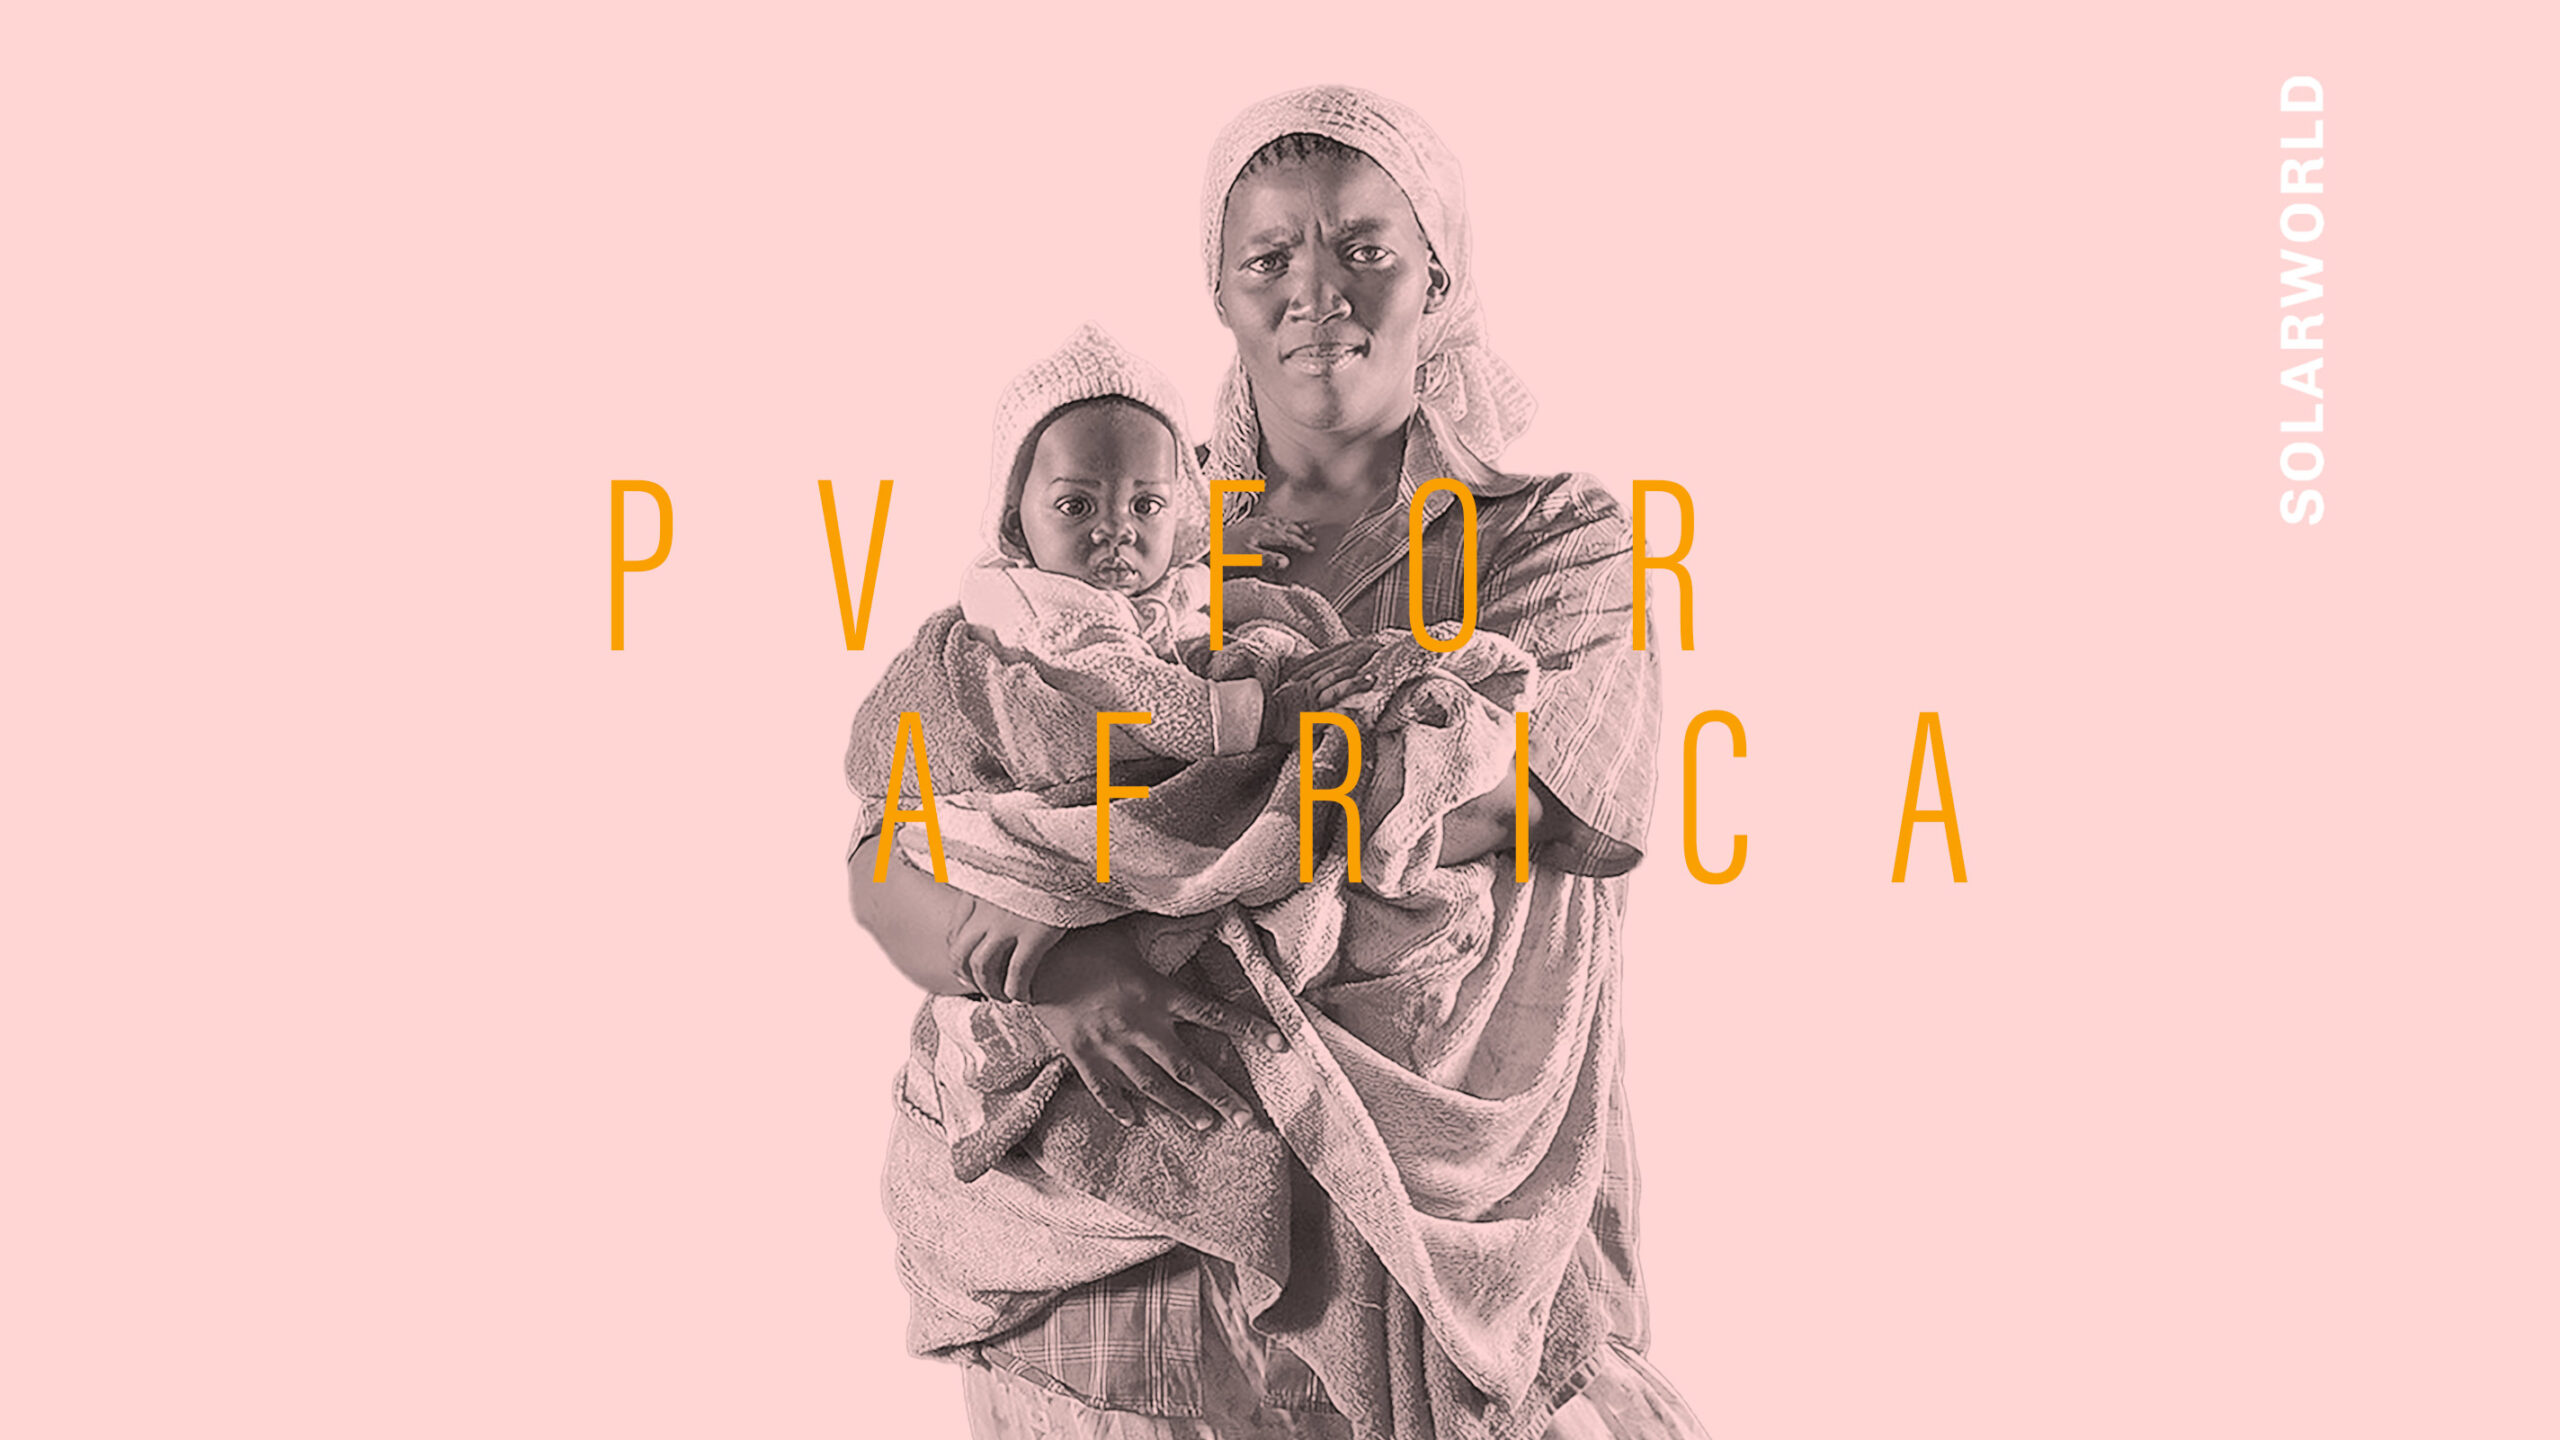 Eine afrikanische Frau mit einem Kind auf dem Arm. Darüber ein gelber Schriftzug "PV for Africa".